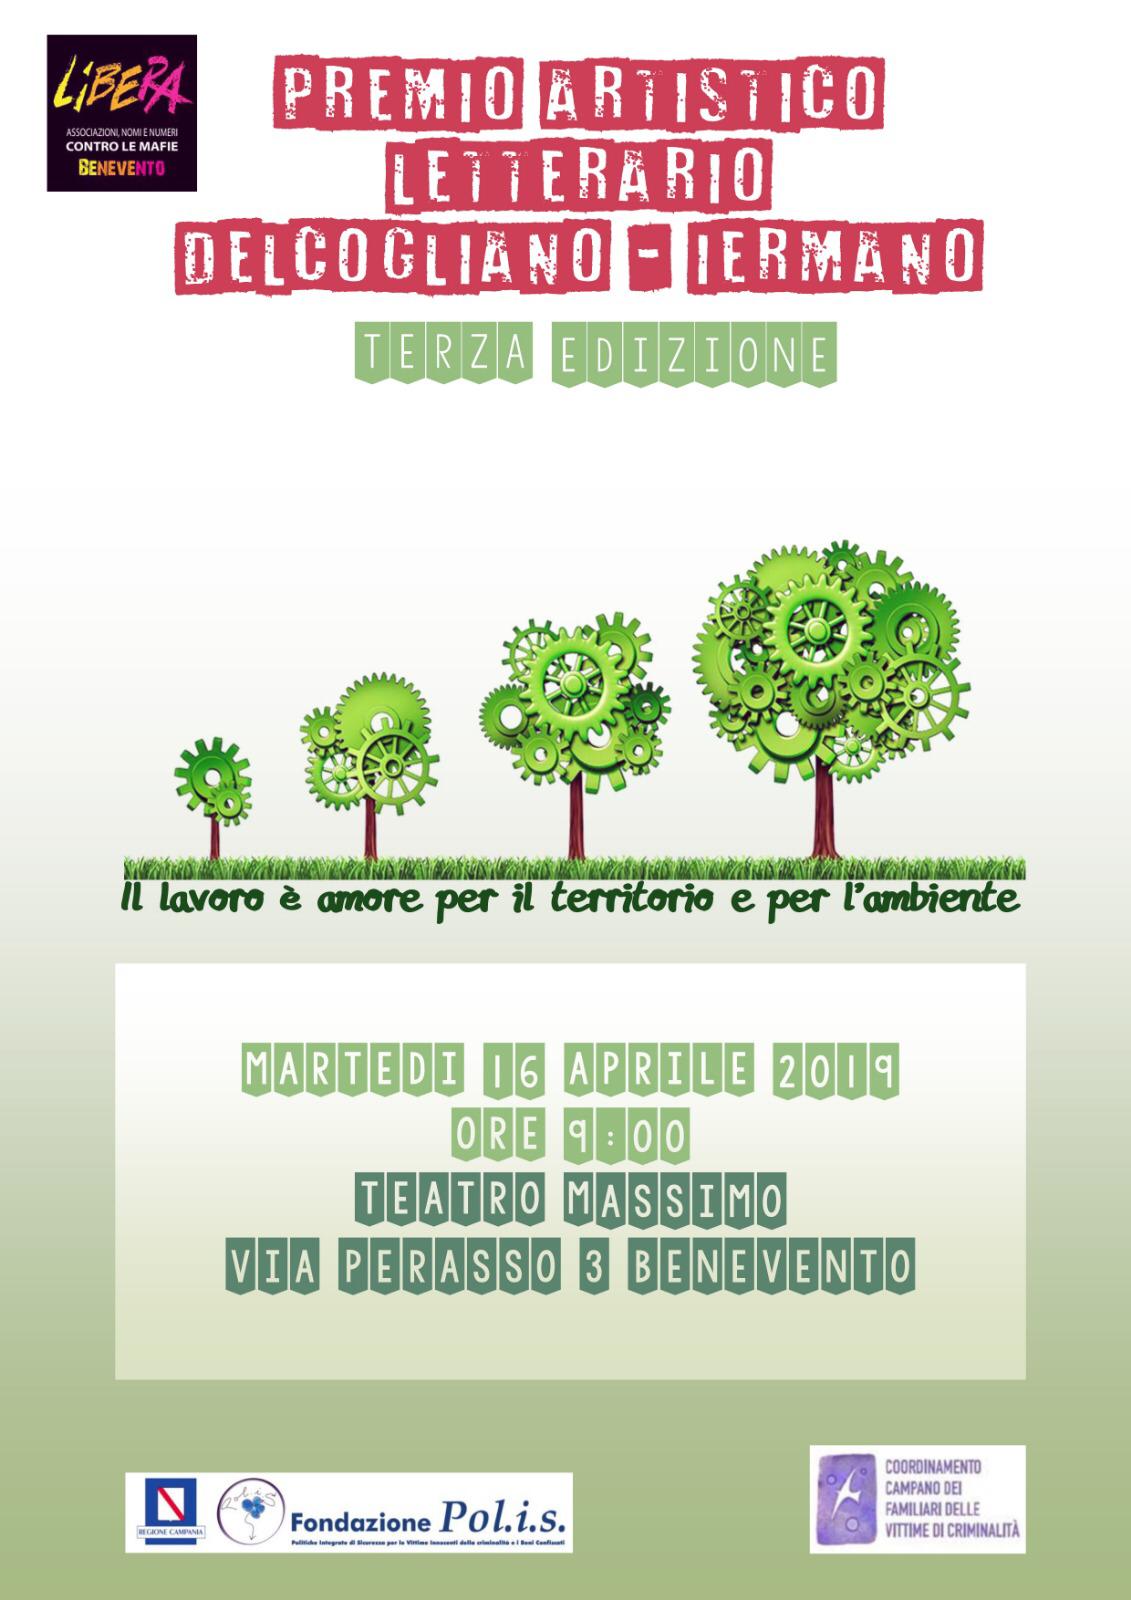 Benevento| Premio artistico letterario “Delcogliano – Iermano”, martedi’ al Teatro Massimo la terza edizione